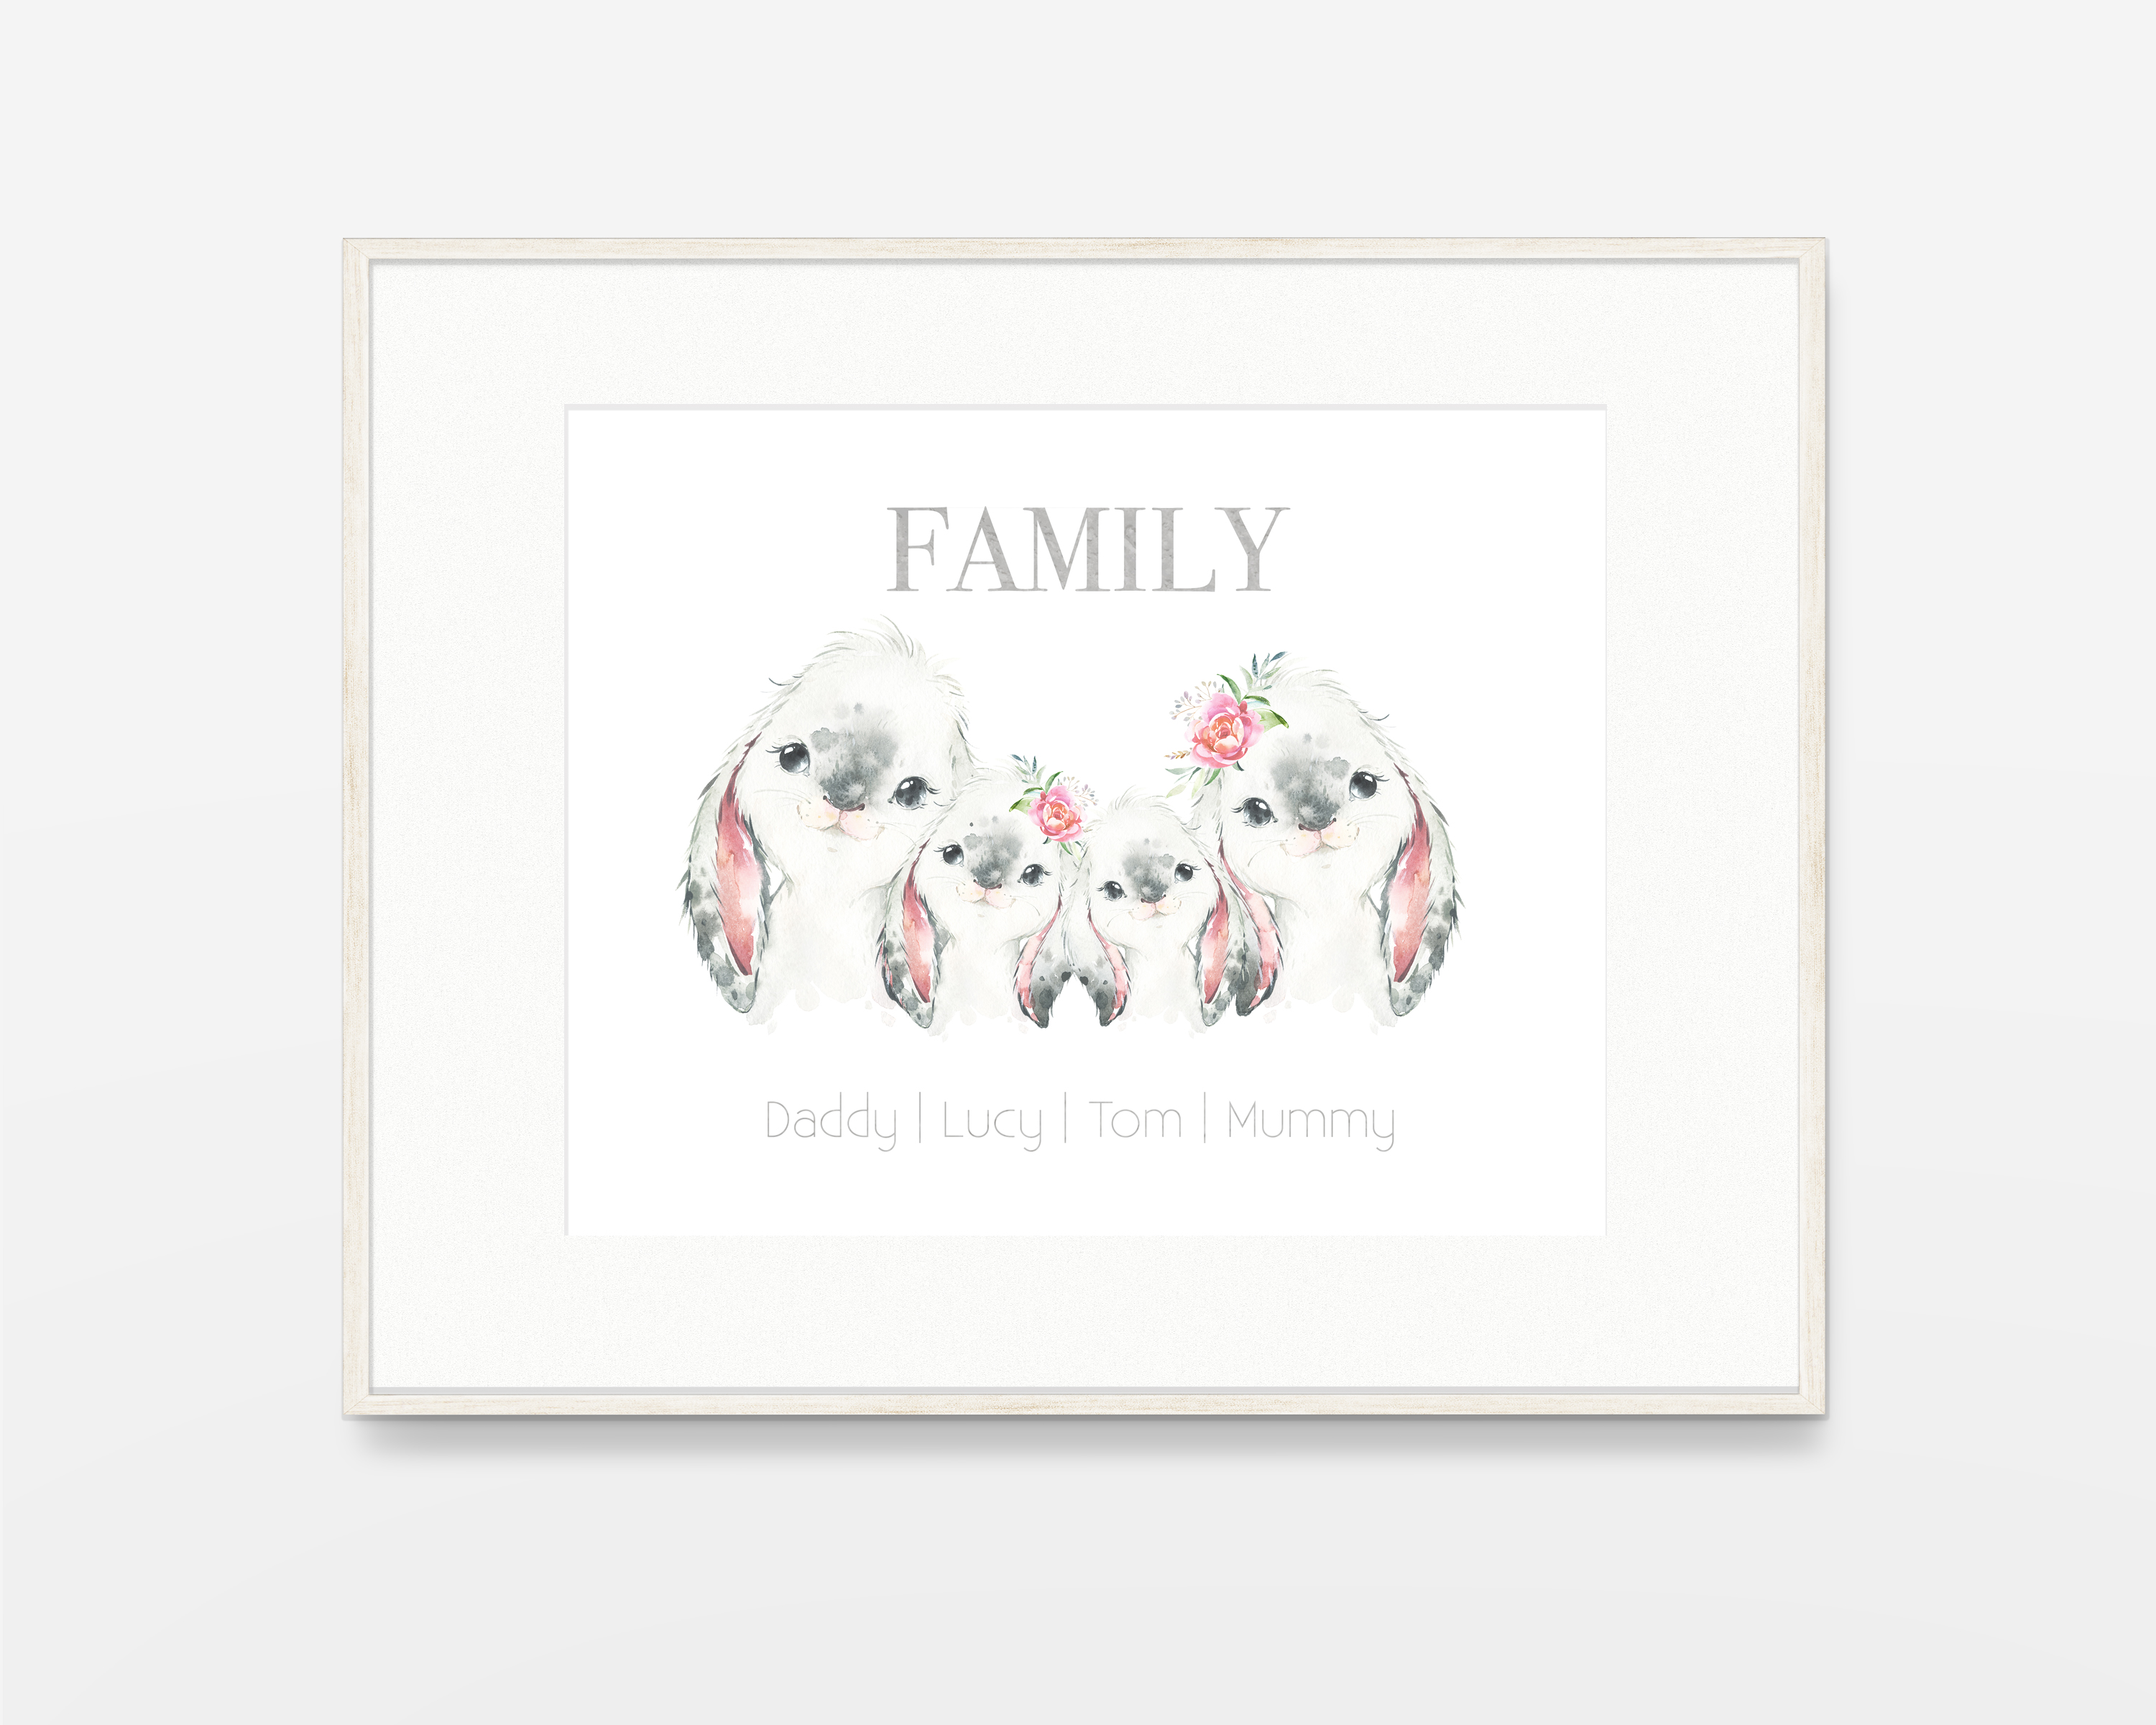 Personalised Family Print family animal print cute watercolor rabbit print 